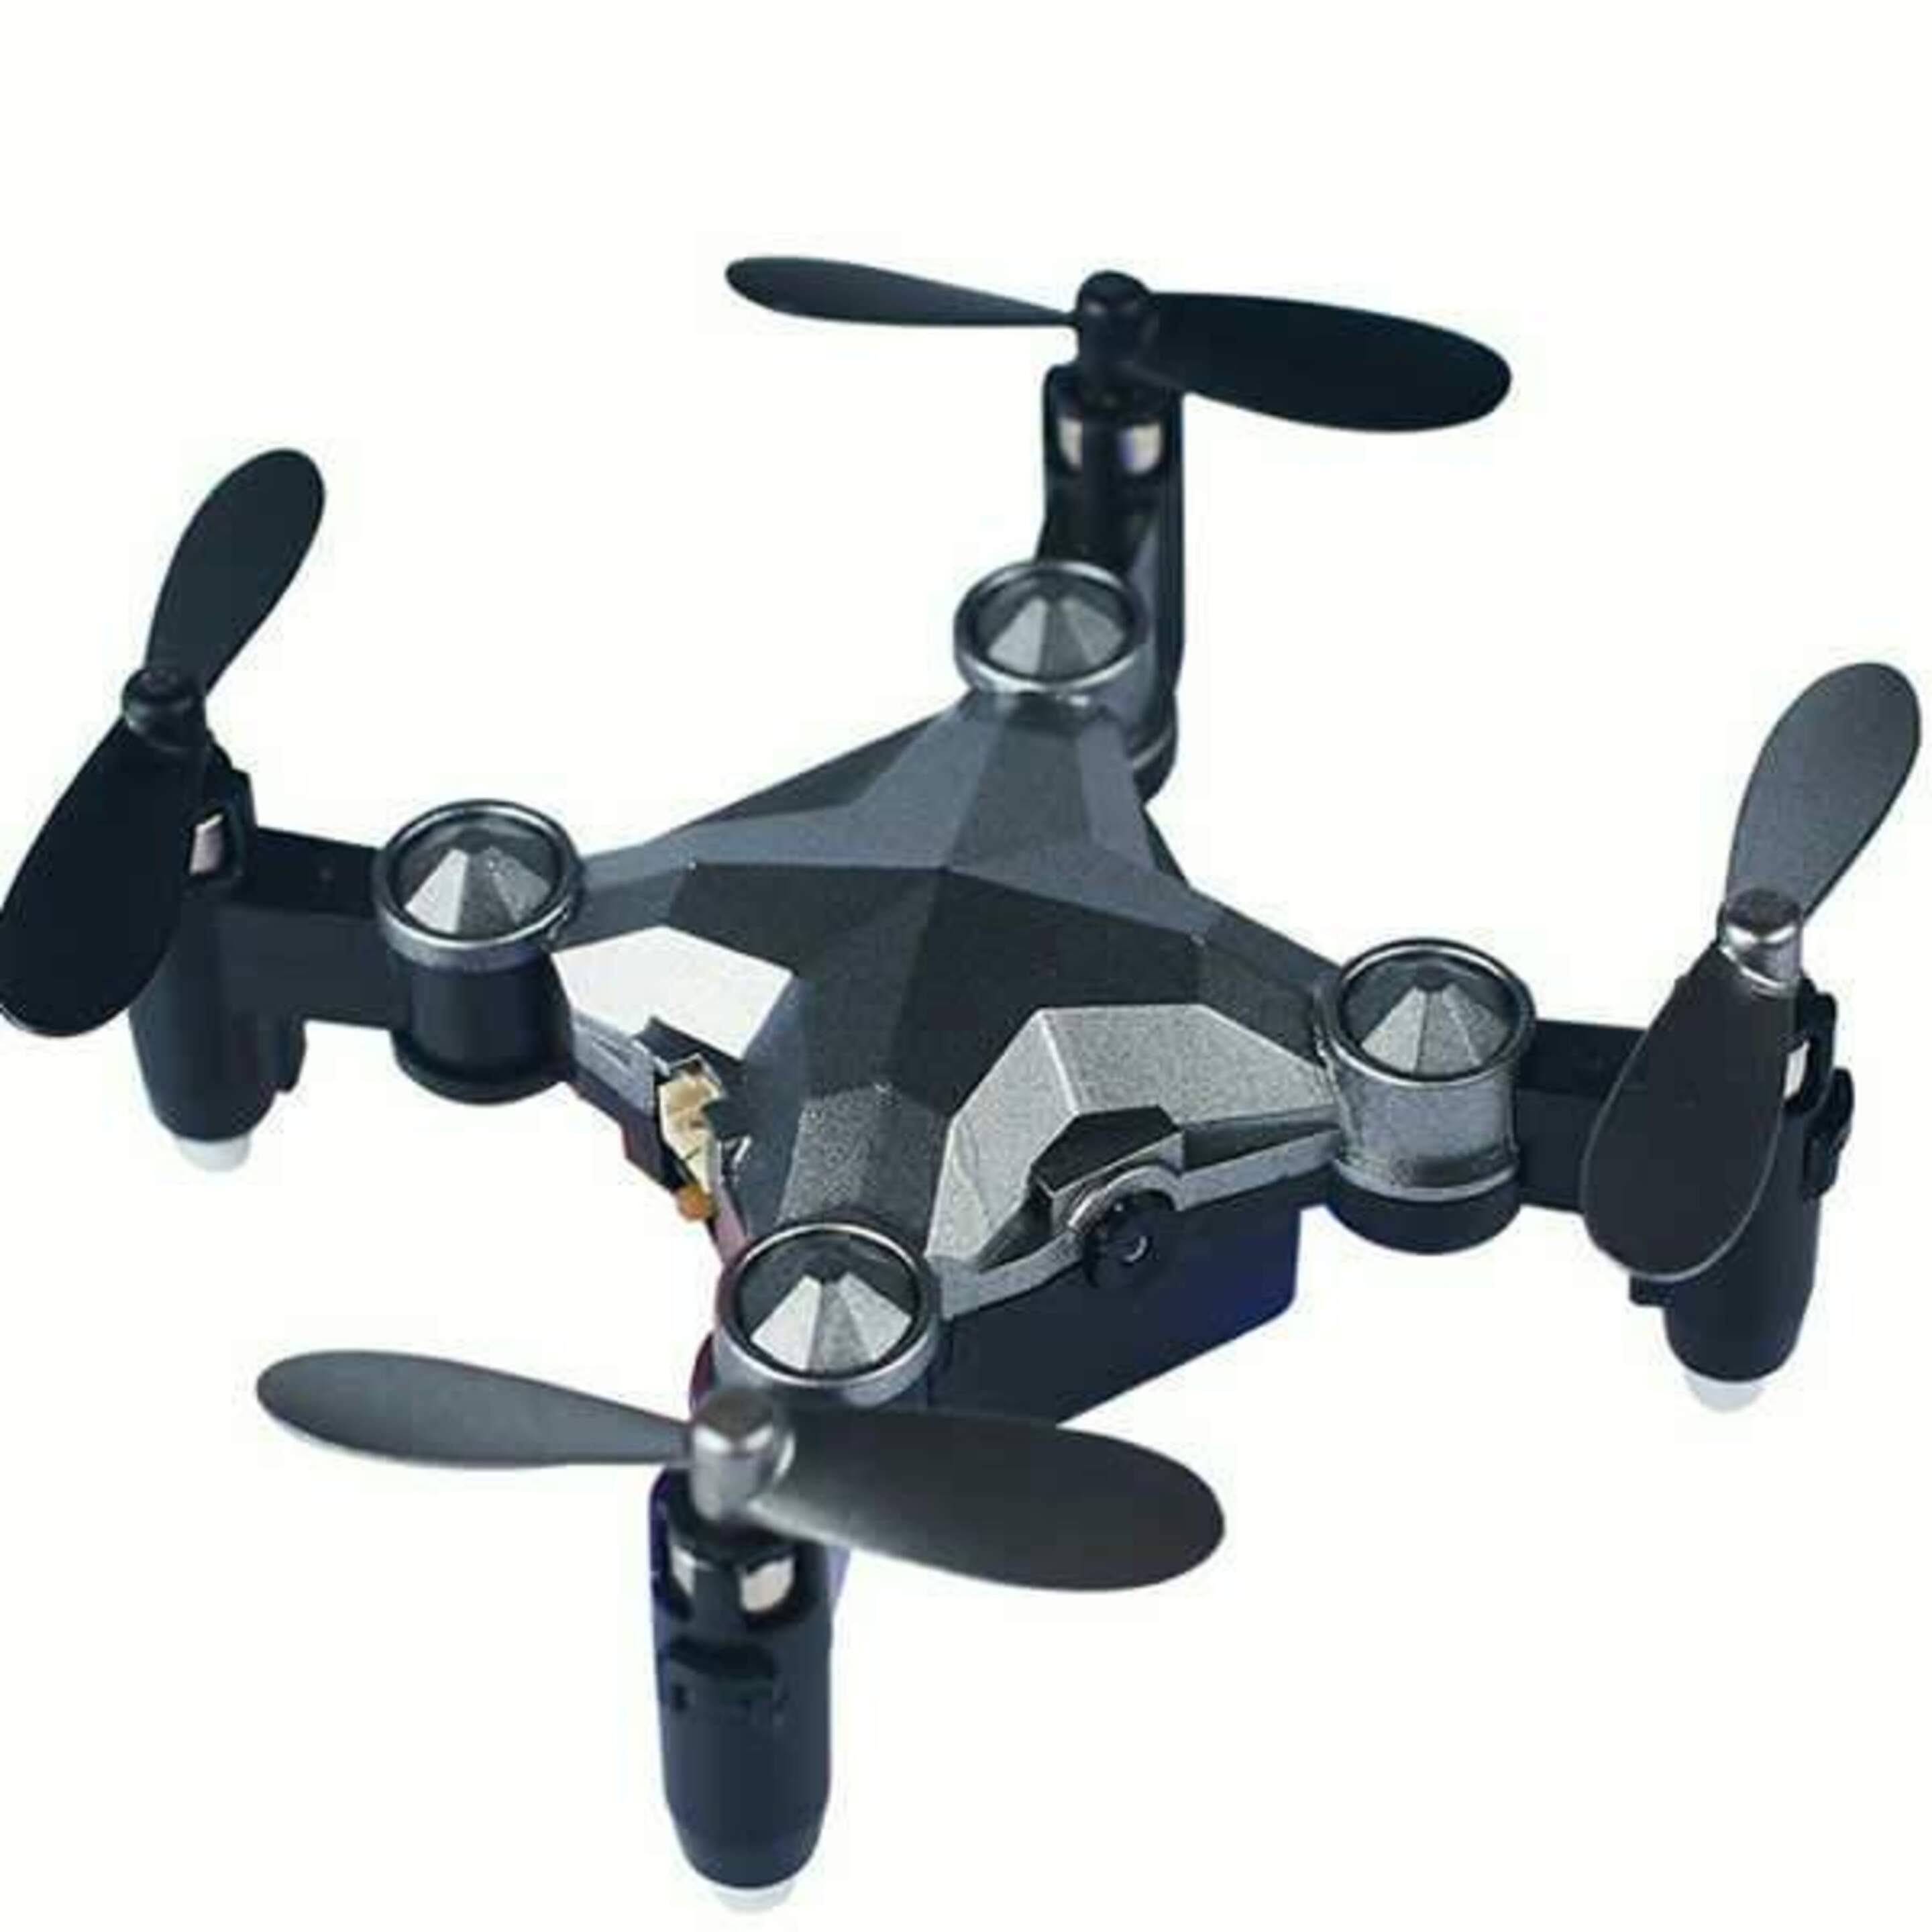 Mini Drone Dobrável Com Câmara 480p, Com Botão De Retorno E Luzes Led Noturnas - gris - 